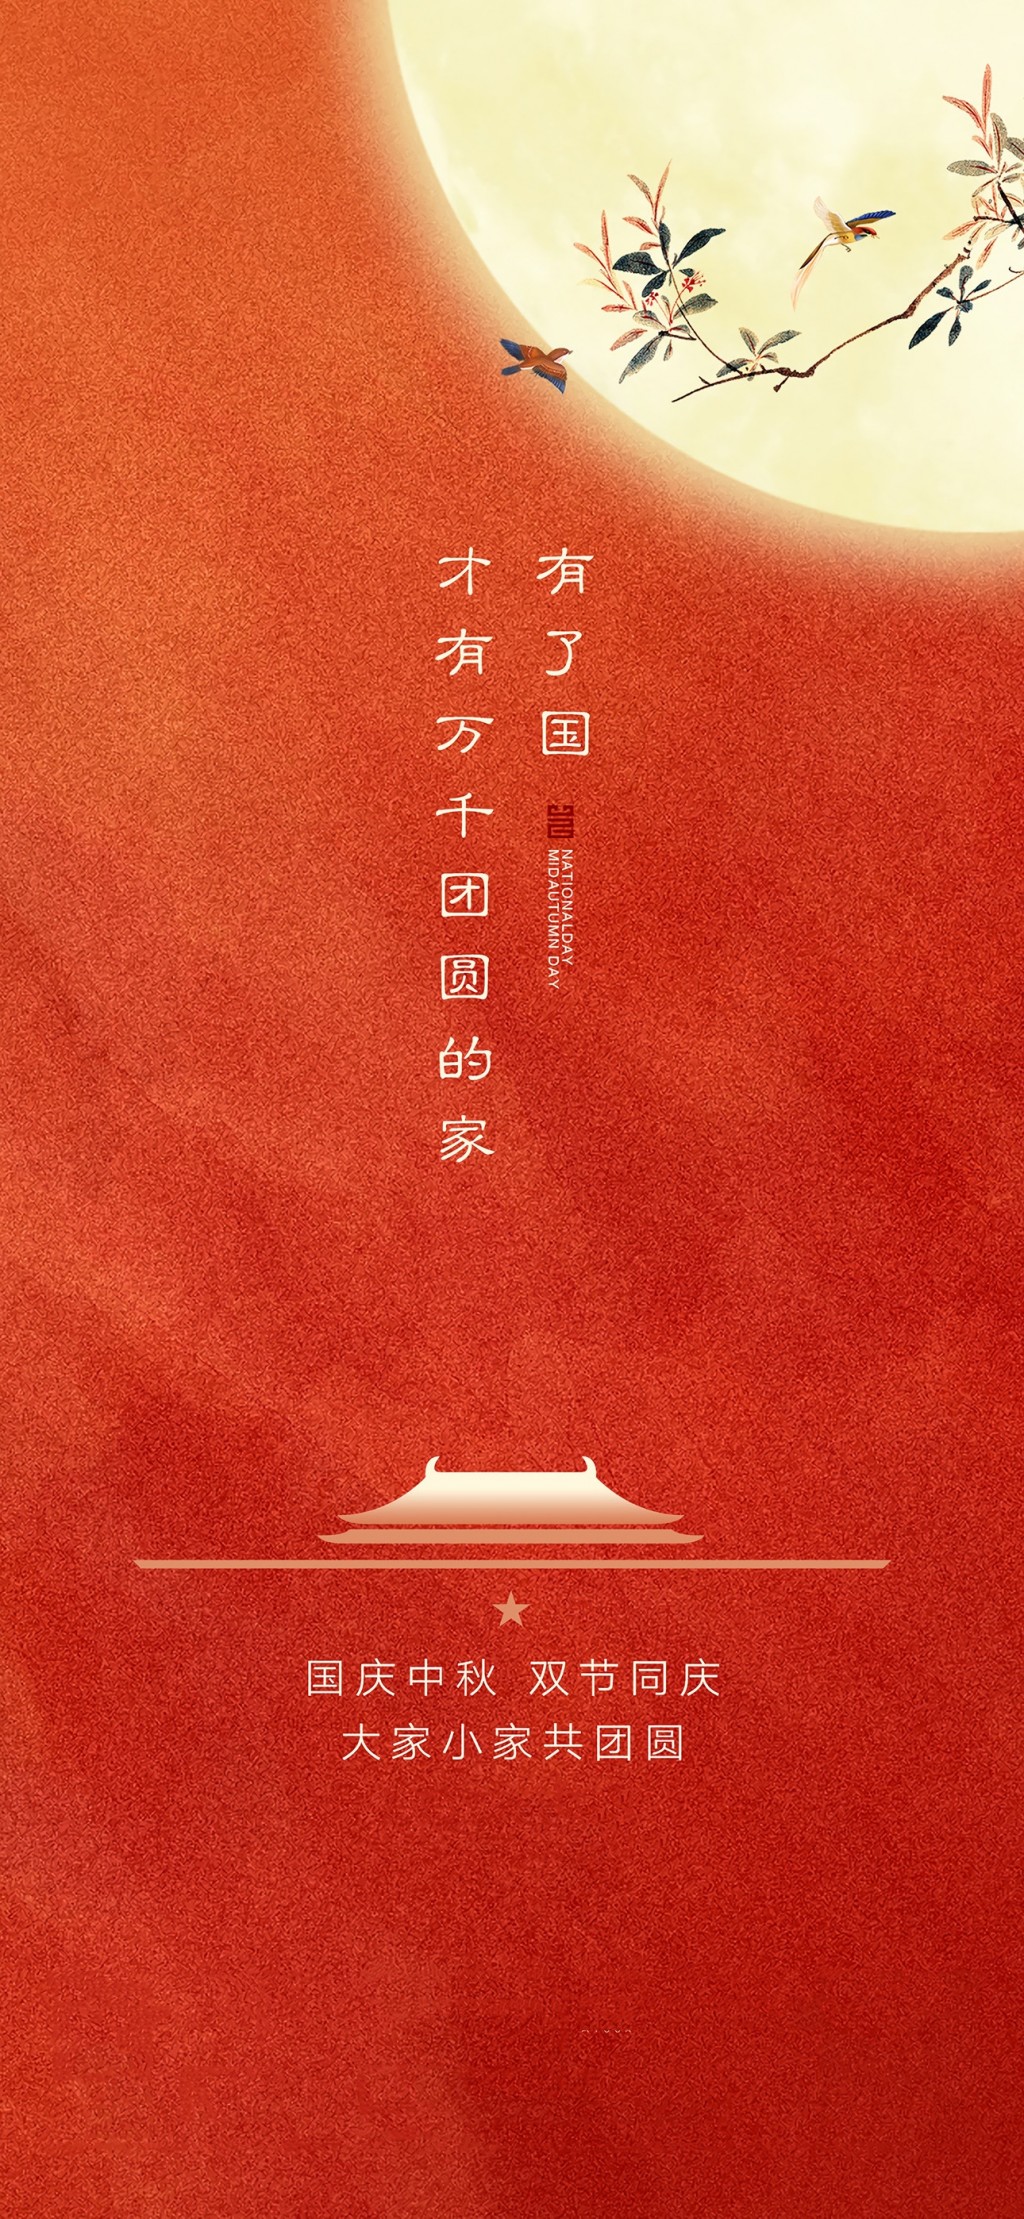 国庆节祝福祖国节日插画手机壁纸